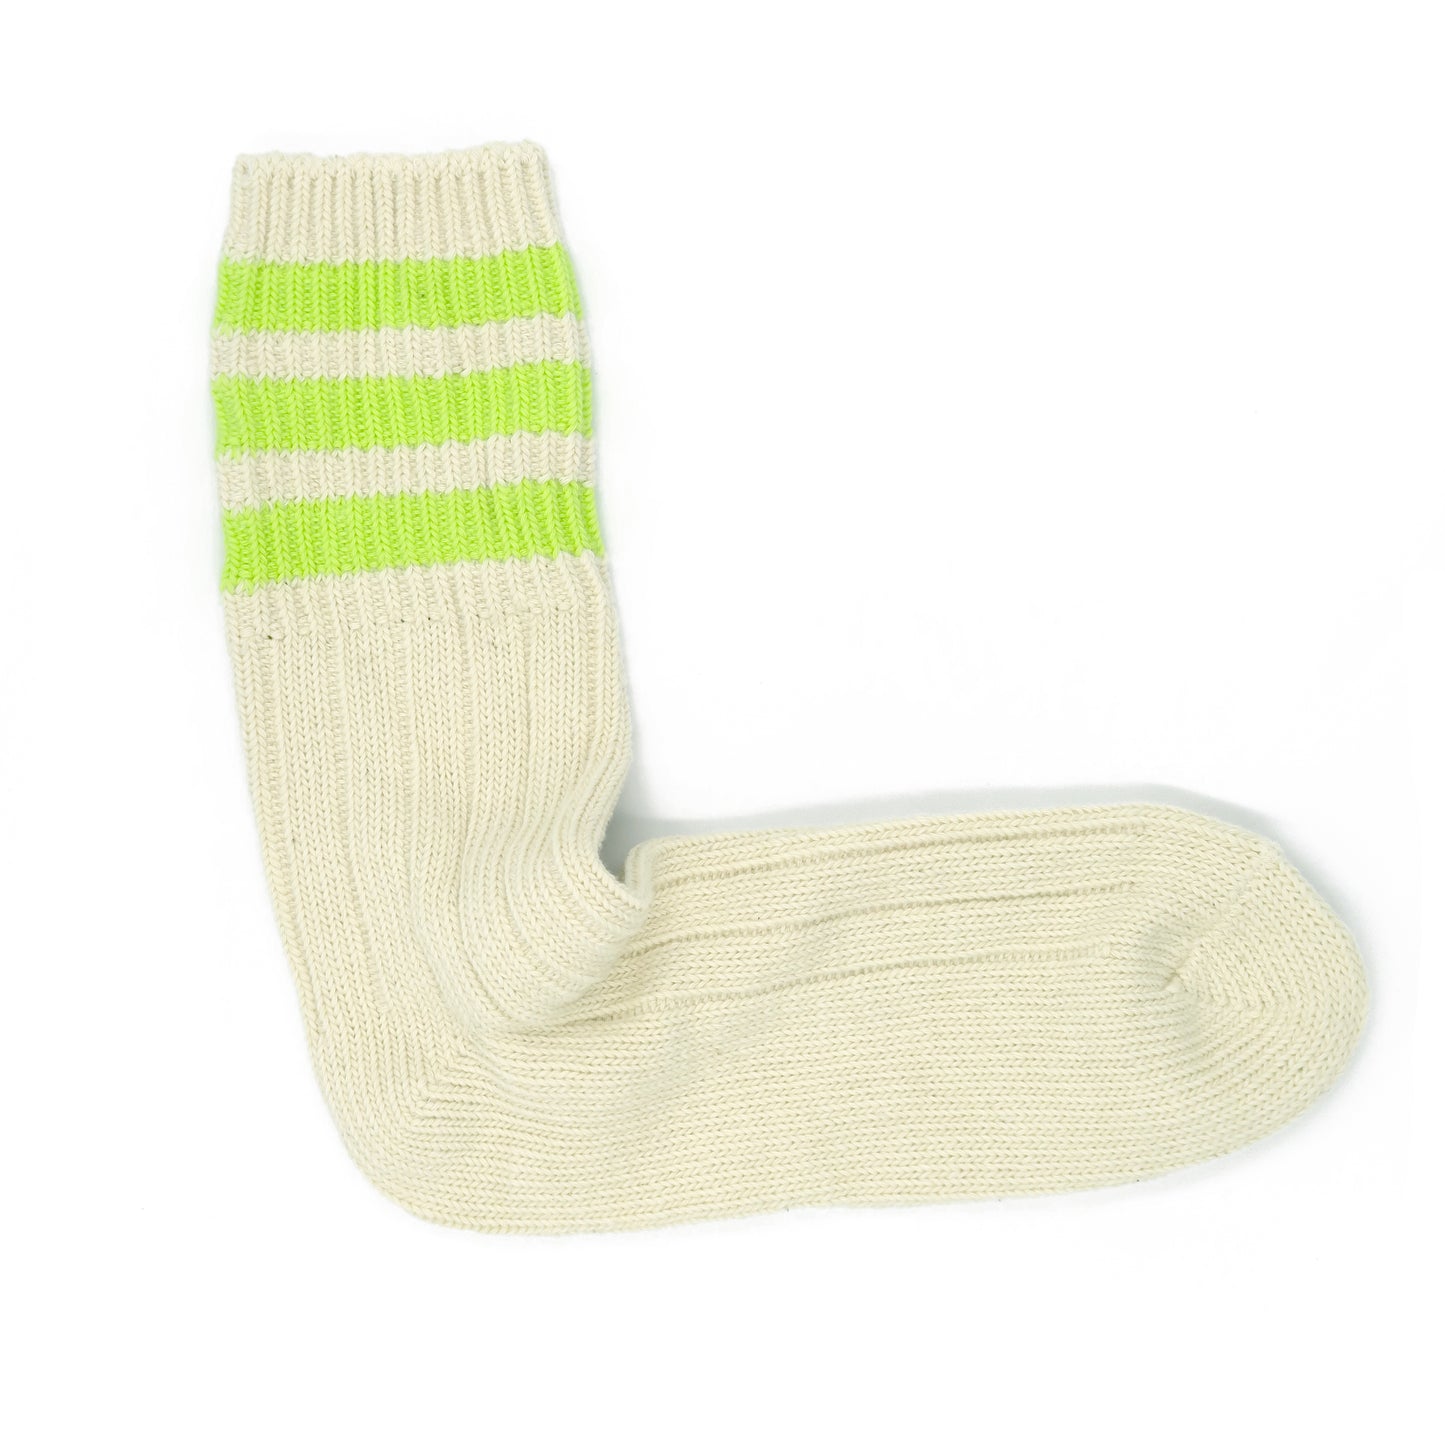 Three Striped Socks - Neon Green